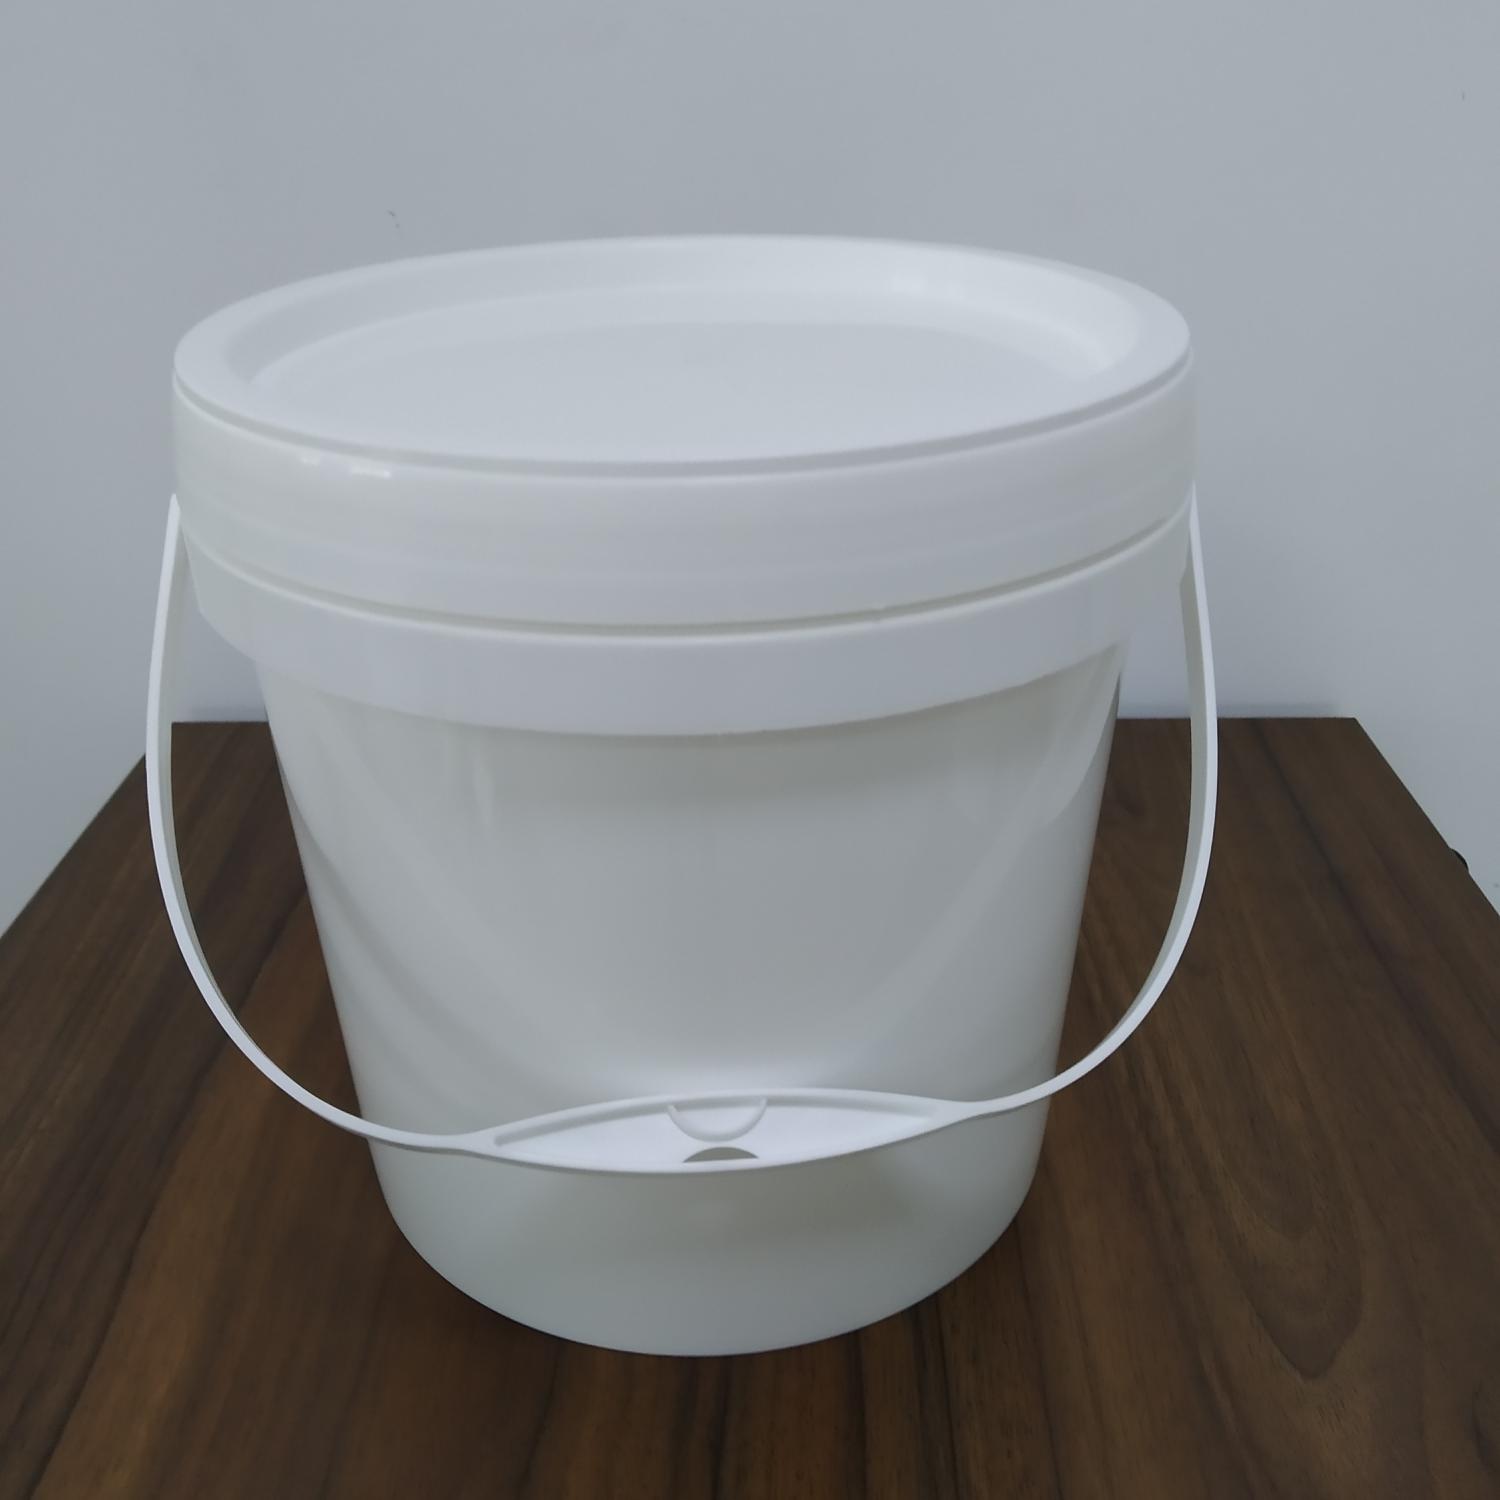 5L 水性金属涂料桶、贝壳粉**包装桶、硅藻泥**包装桶